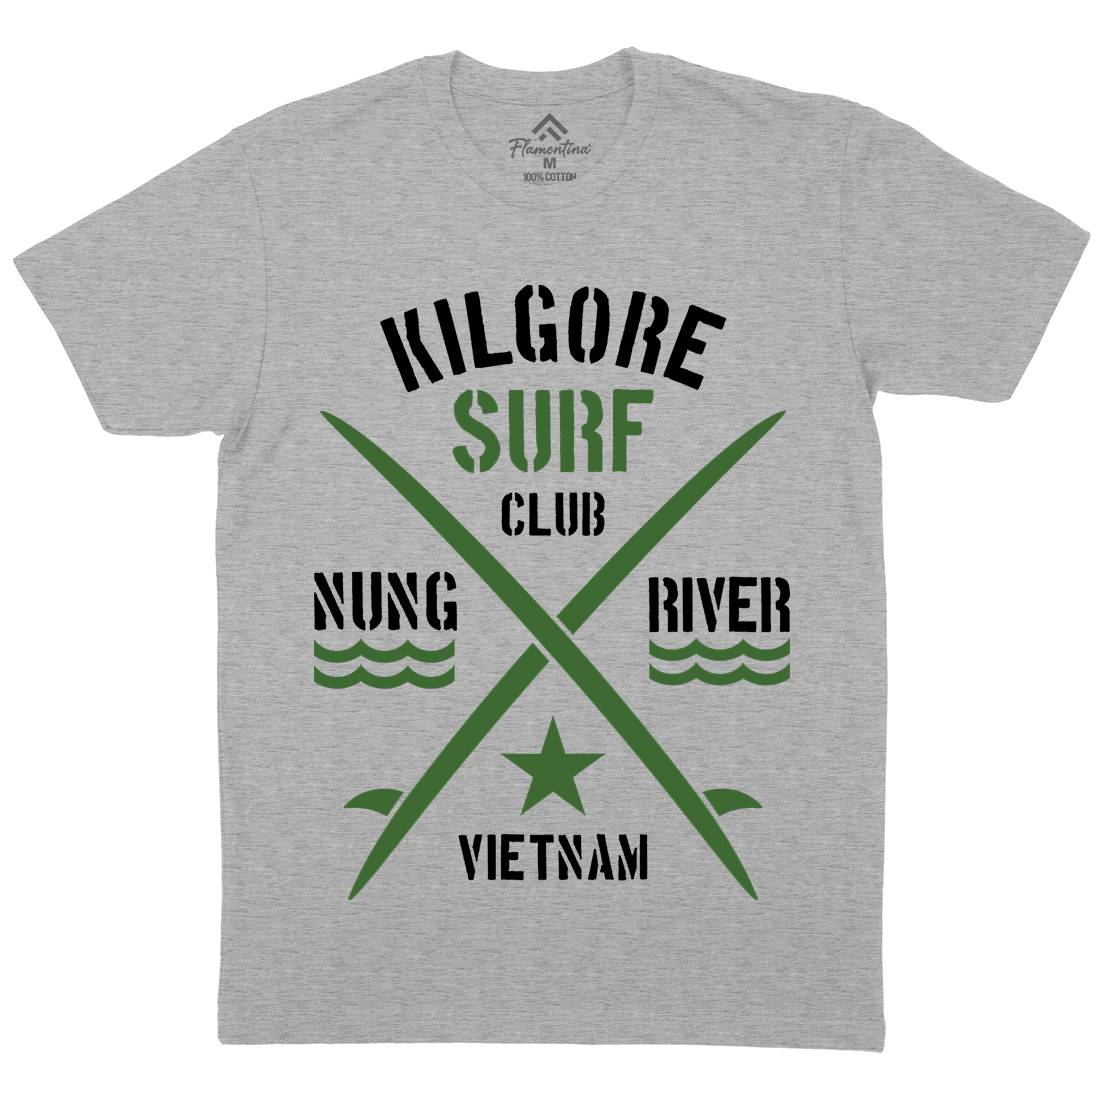 Kilgore Club Mens Crew Neck T-Shirt Surf D234